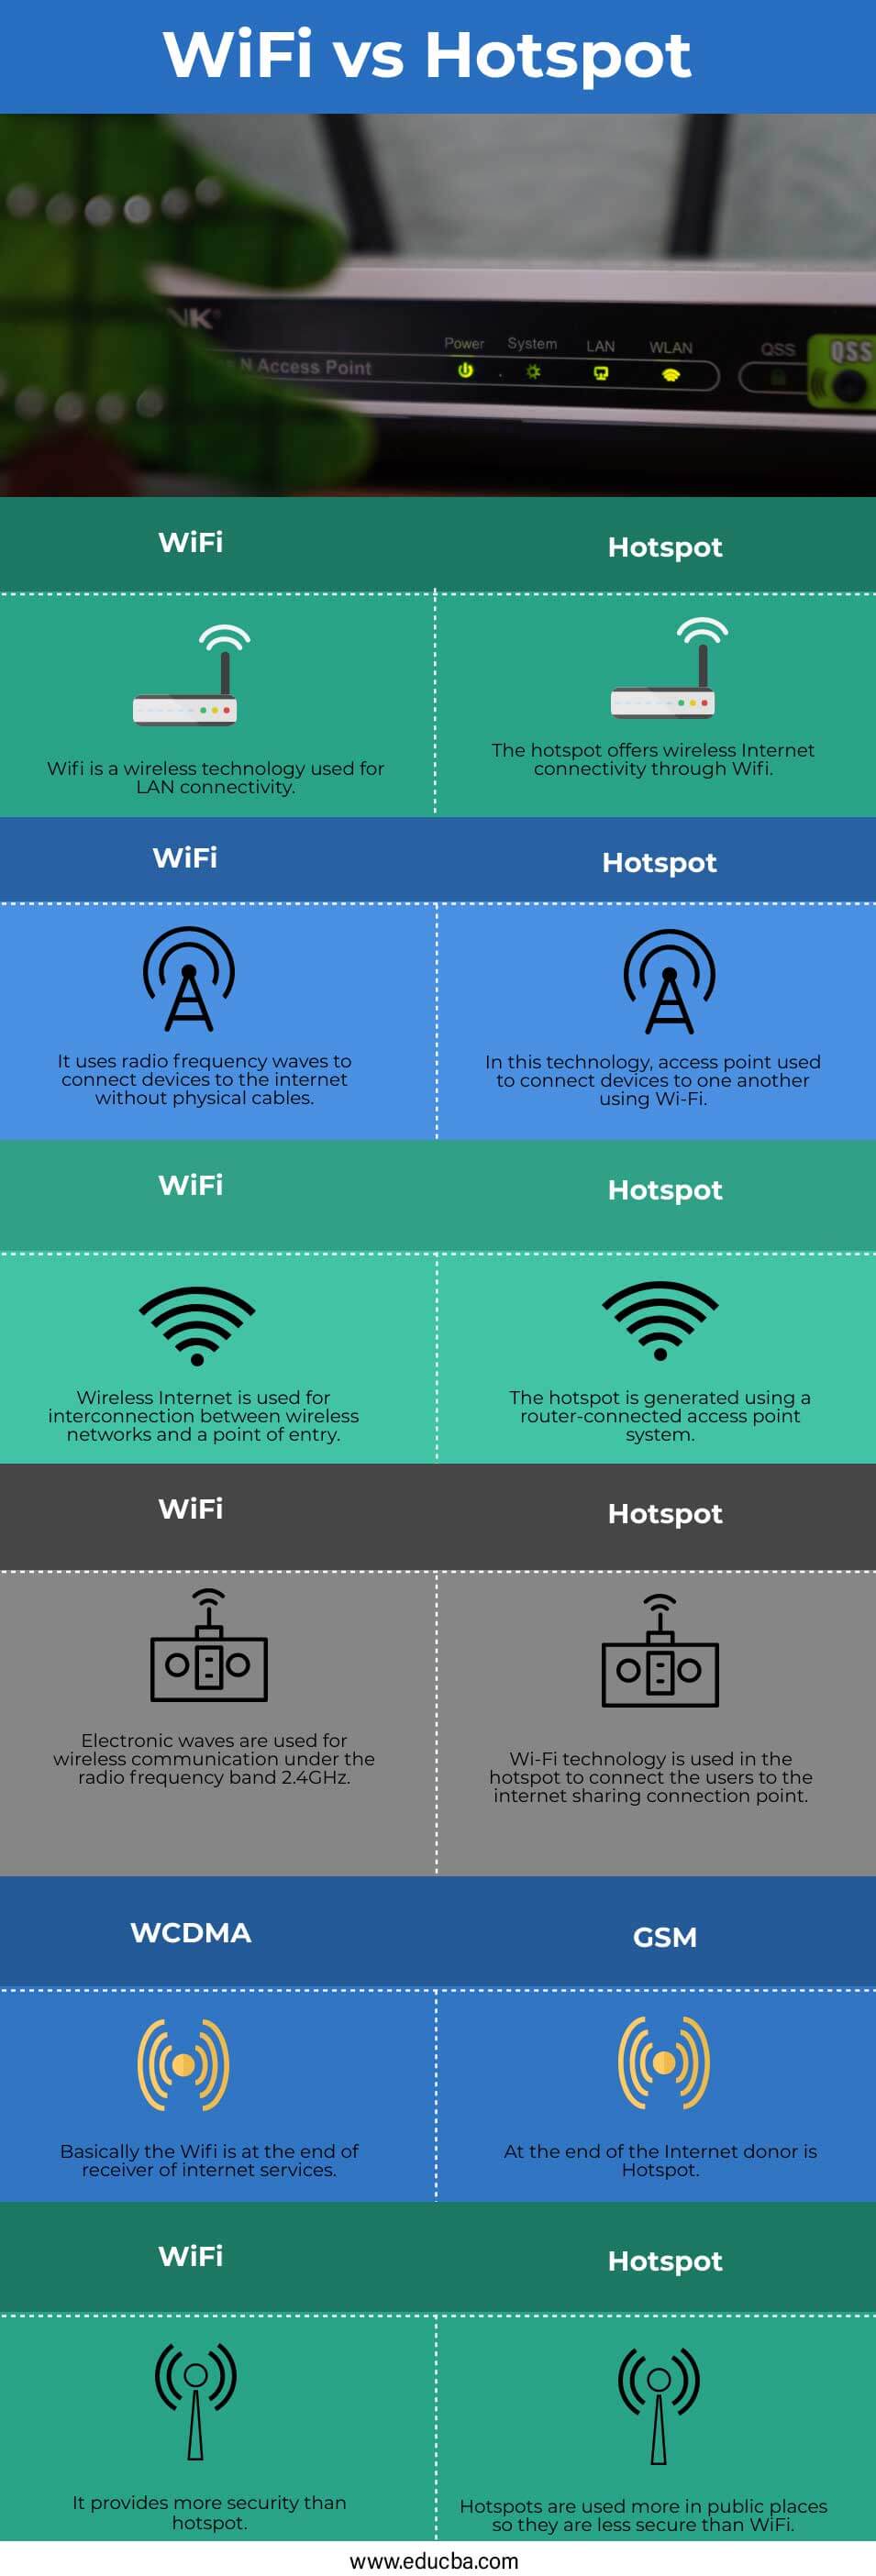 WiFi-vs-Hotspot-info